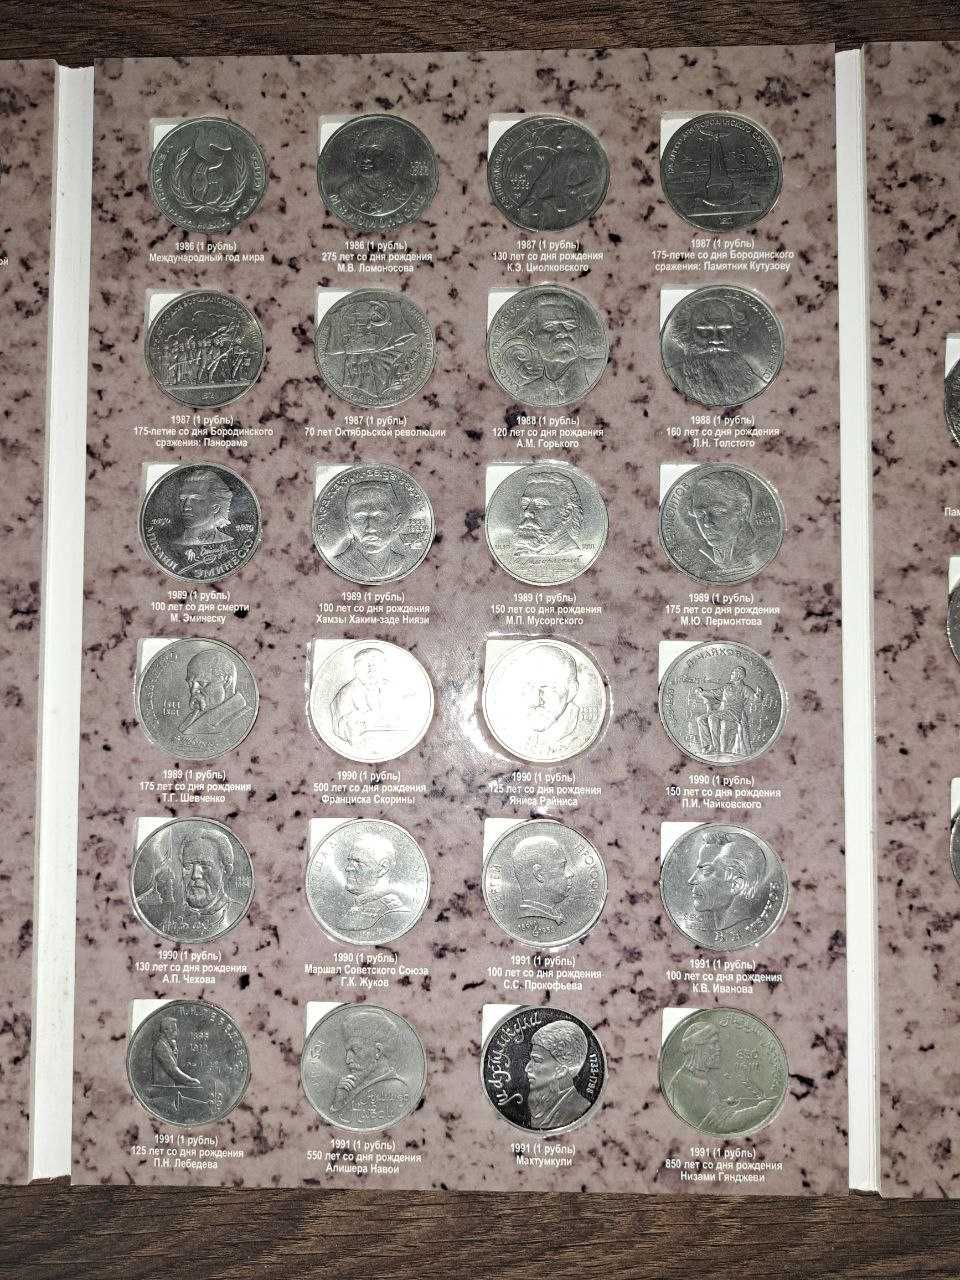 Набори монет у планшетах. США (квотери) та СРСР